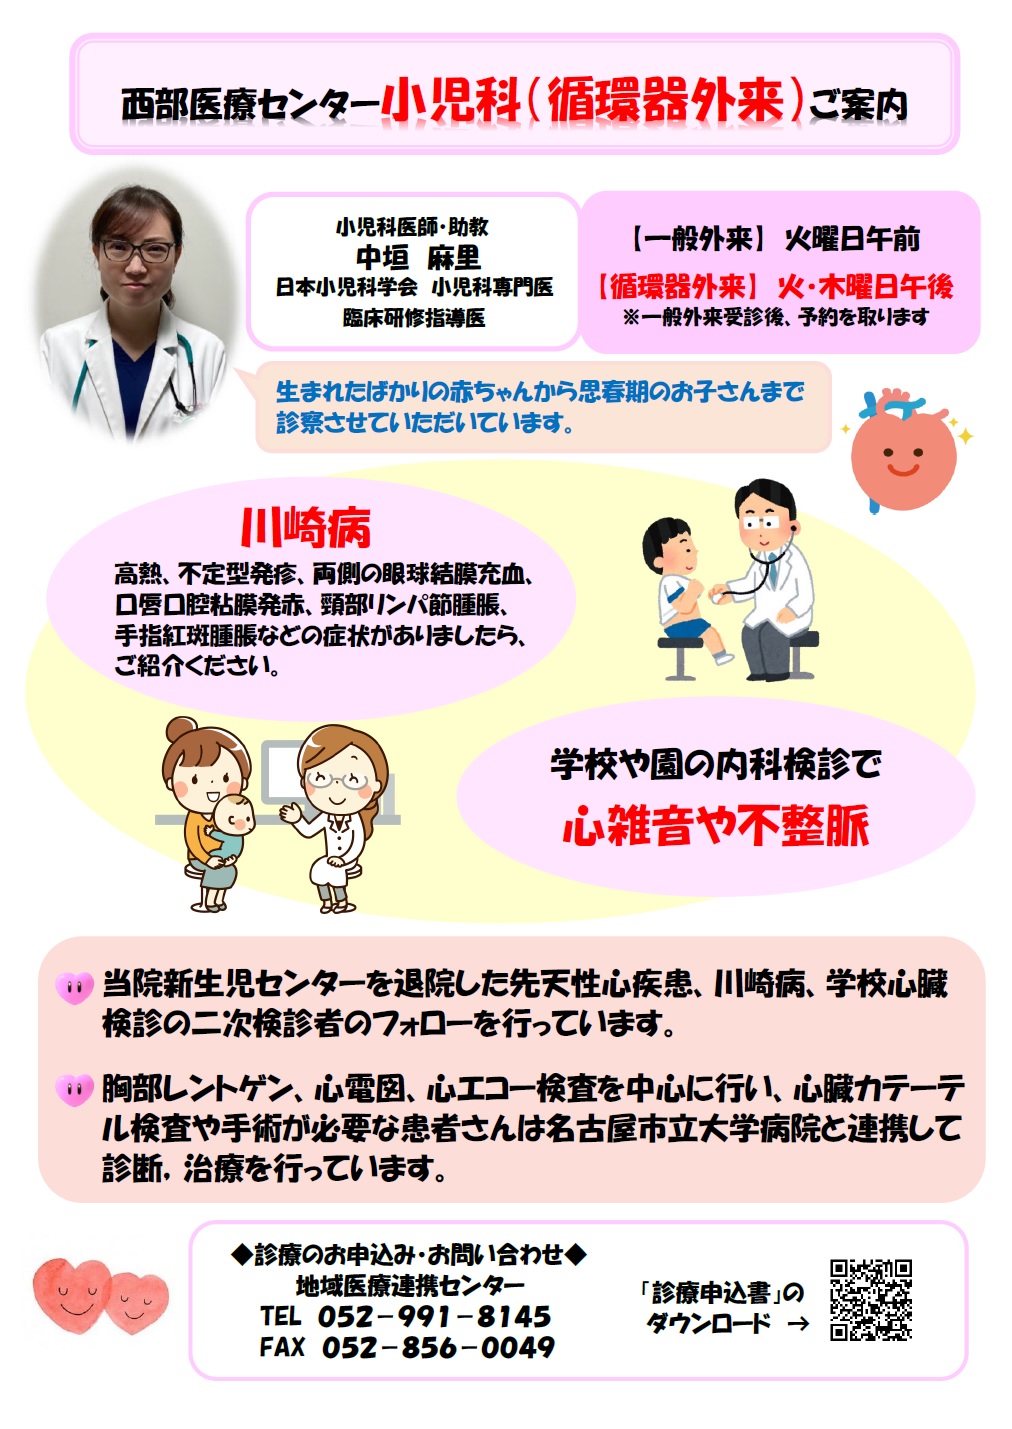 https://www.west-medical-center.med.nagoya-cu.ac.jp/wp-content/uploads/2022/05/27cae39471f331193ddeceda775766ac.jpg